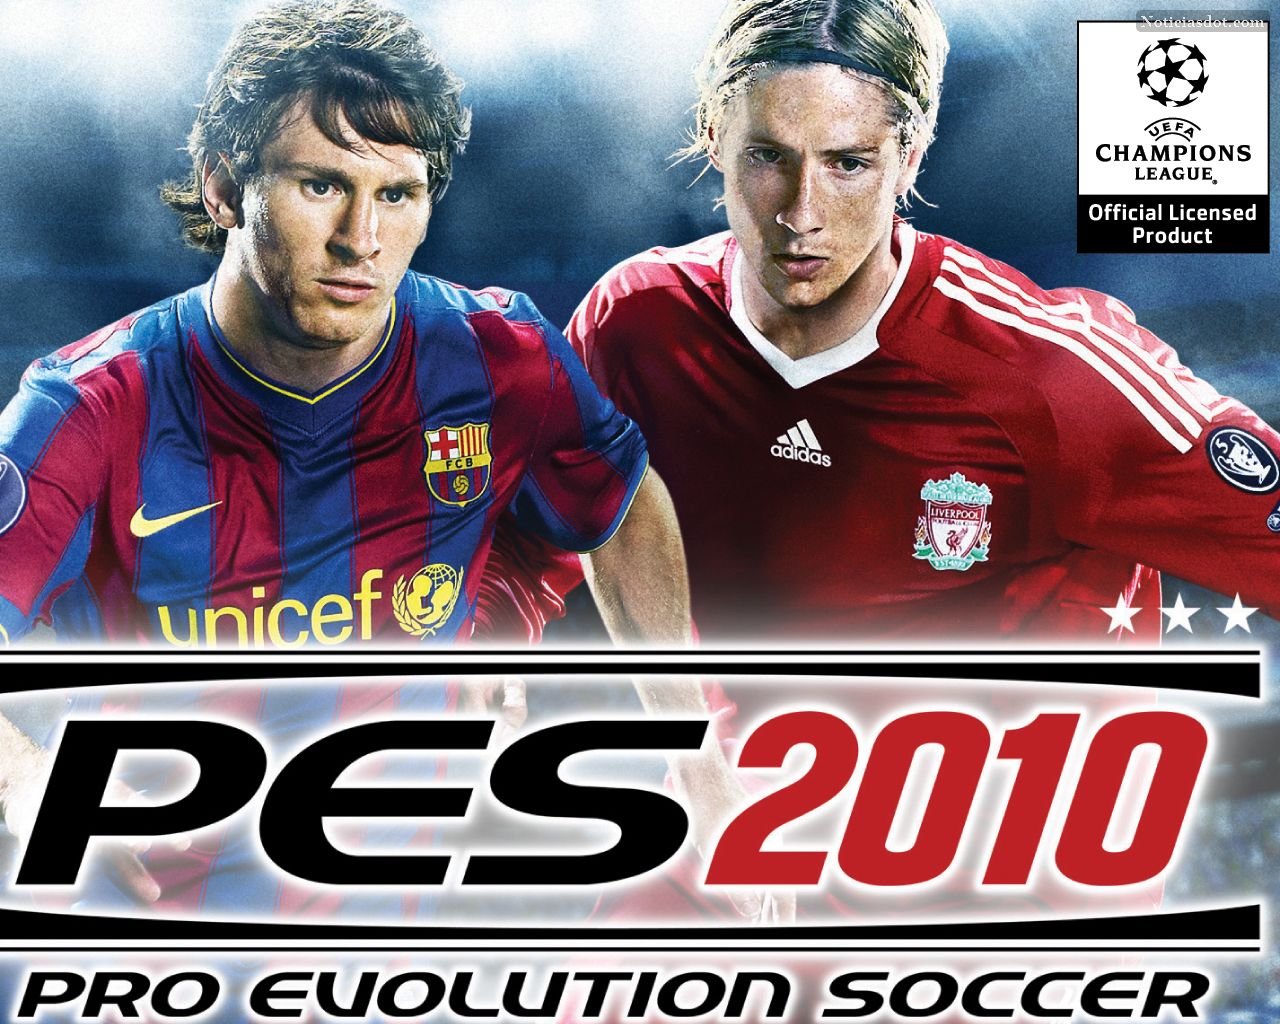 pro evolution soccer 2010 download bittorrent